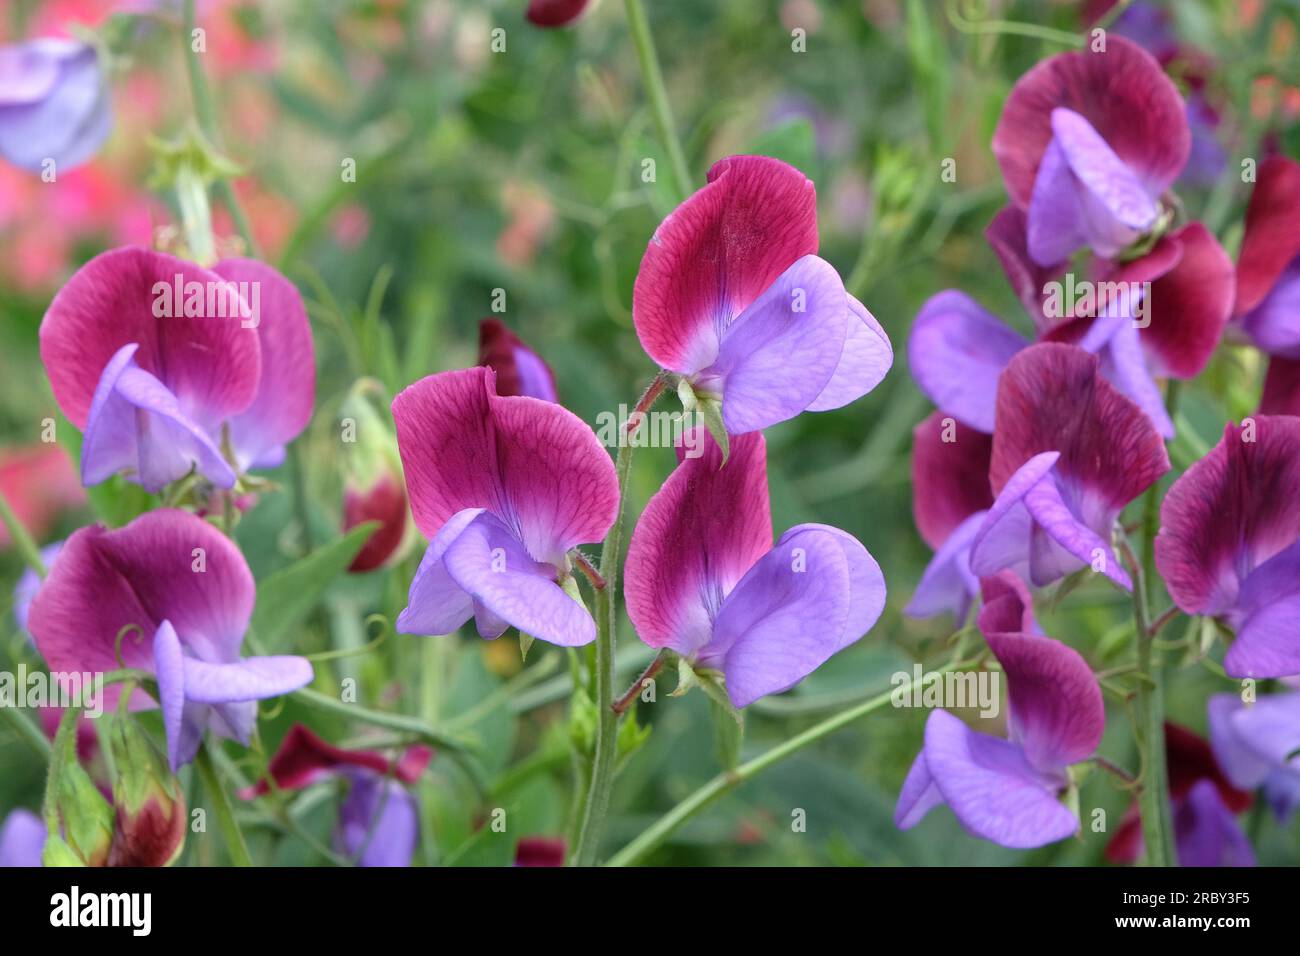 Lathyrus odoratus Cedric Morris in flower. Stock Photo